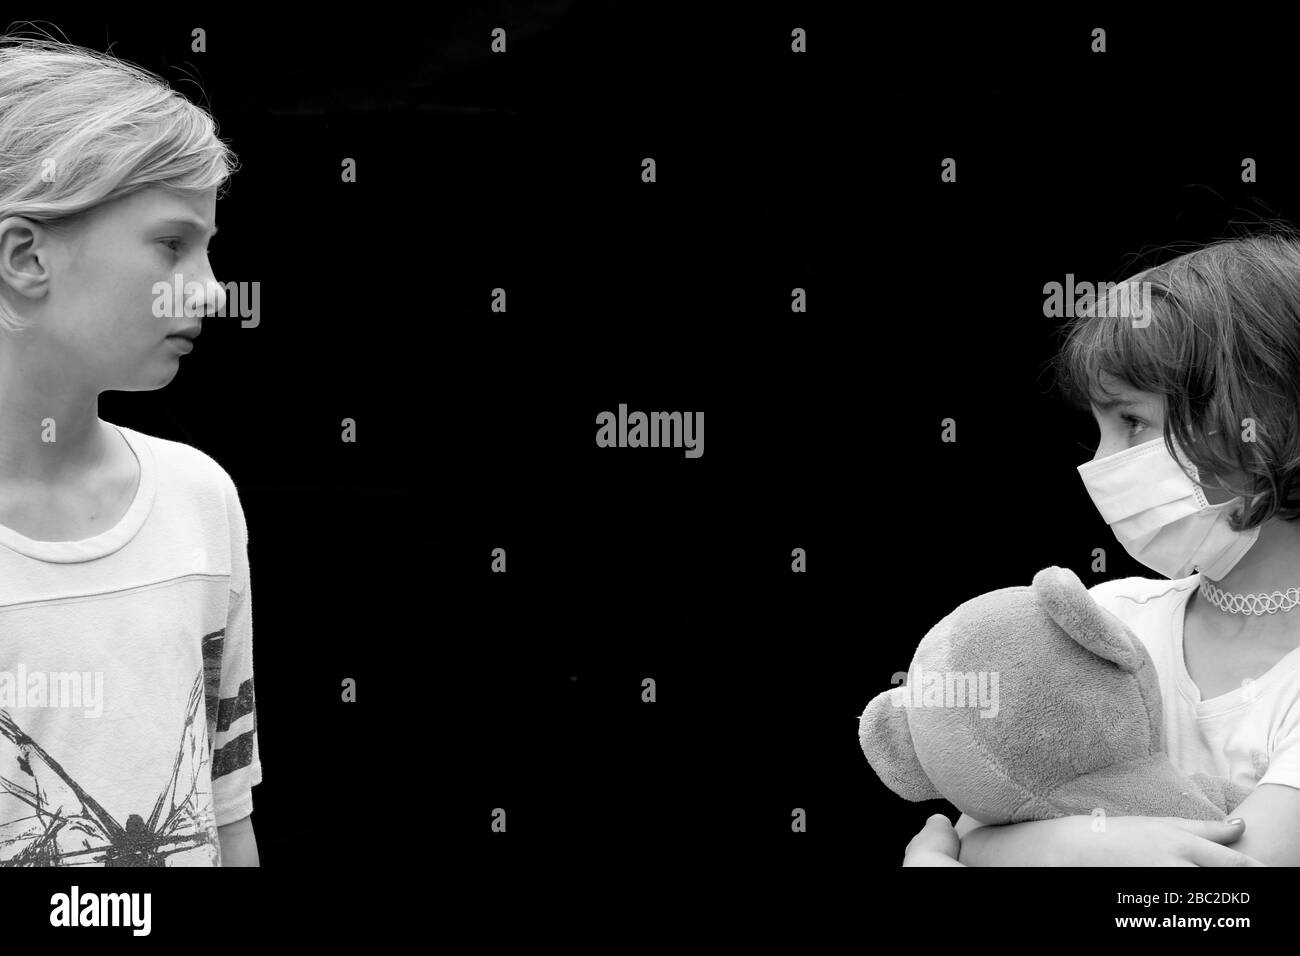 Ritratto in bianco e nero della distanza sociale tra due bambini piccoli, una maschera facciale e un orsacchiotto Foto Stock